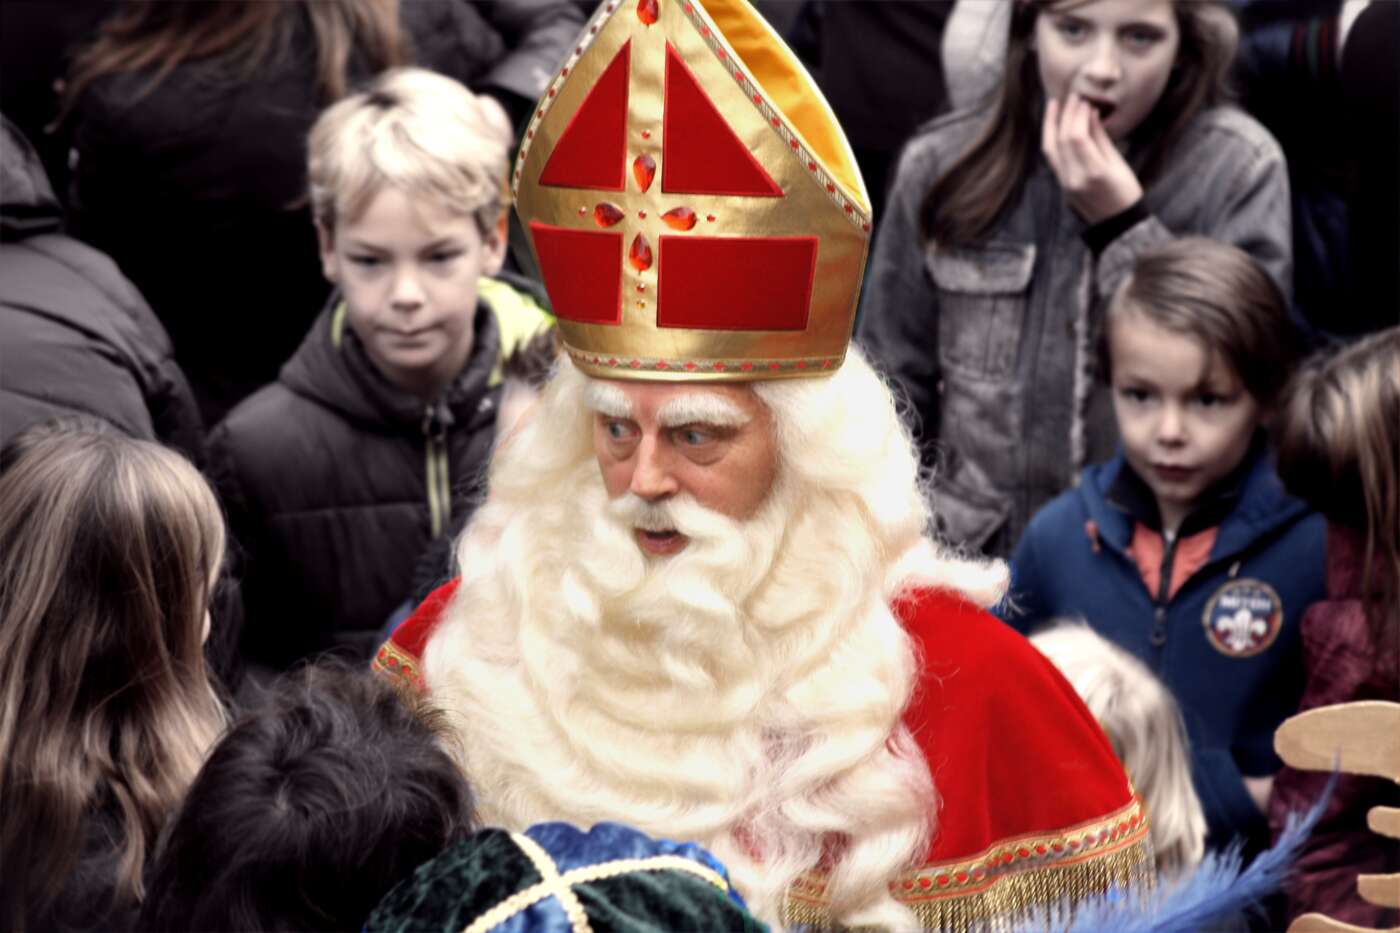 Sinterklaas wie er mit Kinder redet. So nebenbei Der hinter dem Bart ist unser Nachbar